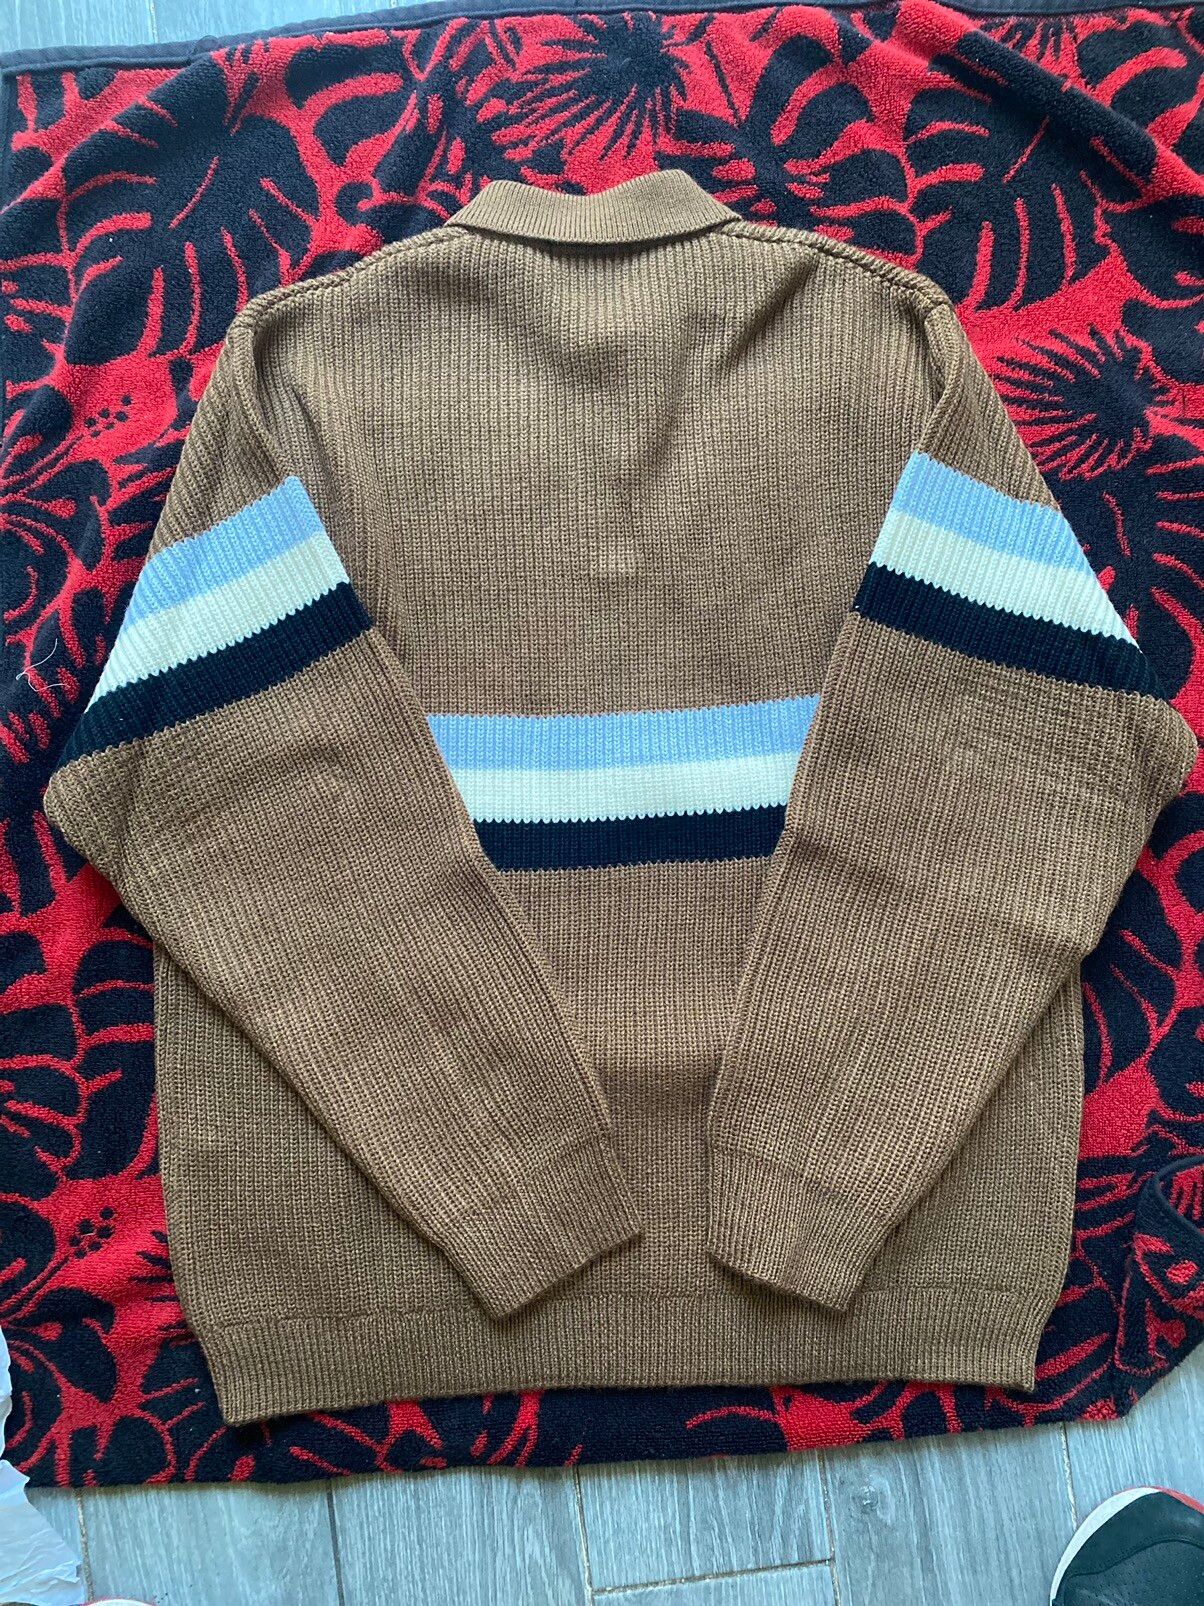 Supreme Supreme Small Box Polo Sweater Brown size L | Grailed